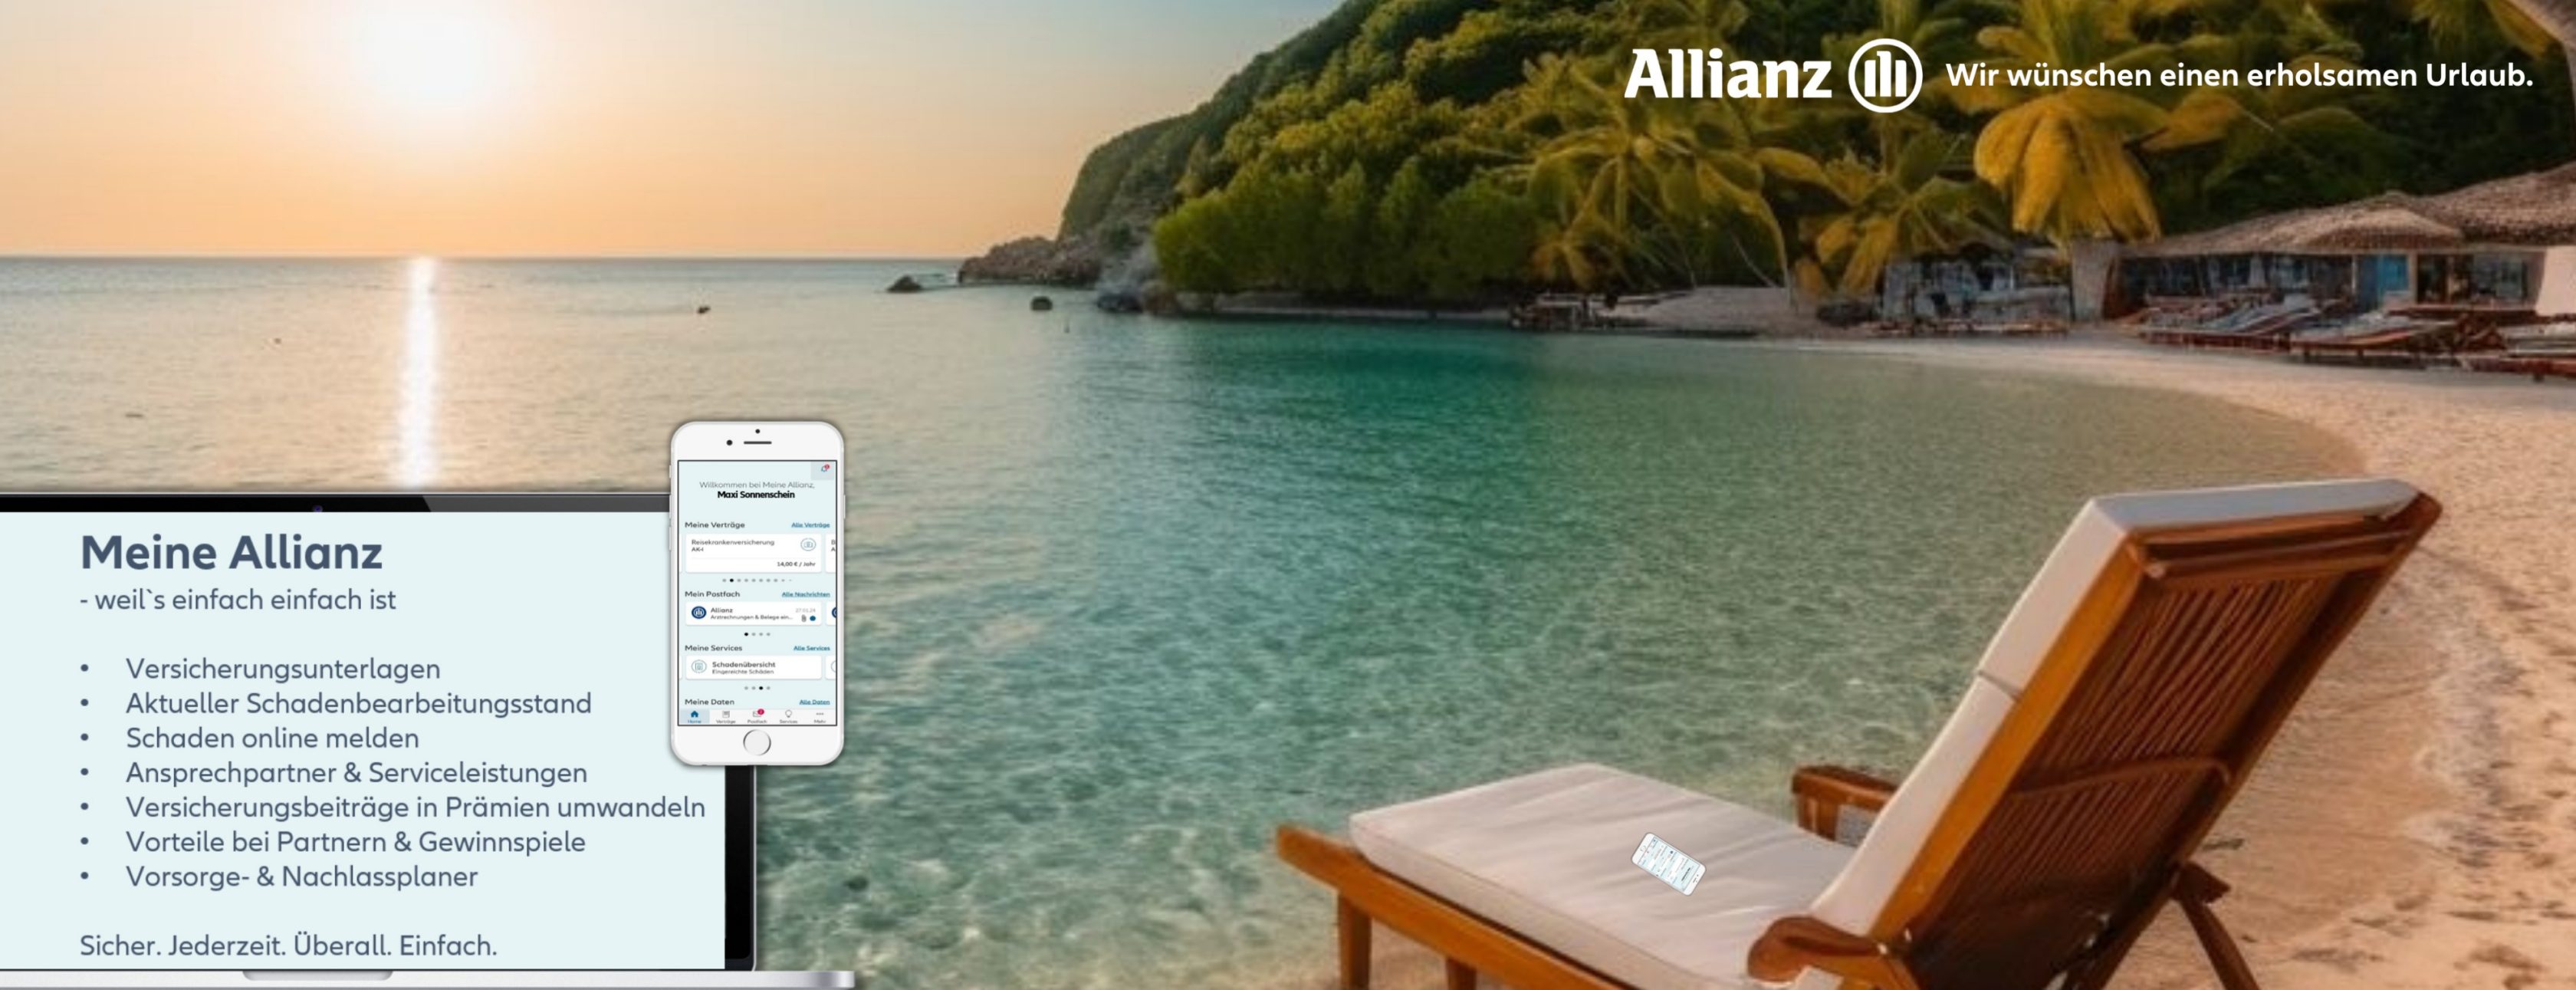 Allianz Versicherung Marc-Oliver Kaul Berlin - Urlaub, Allianz, Meine Allianz, MAZ, Service-App